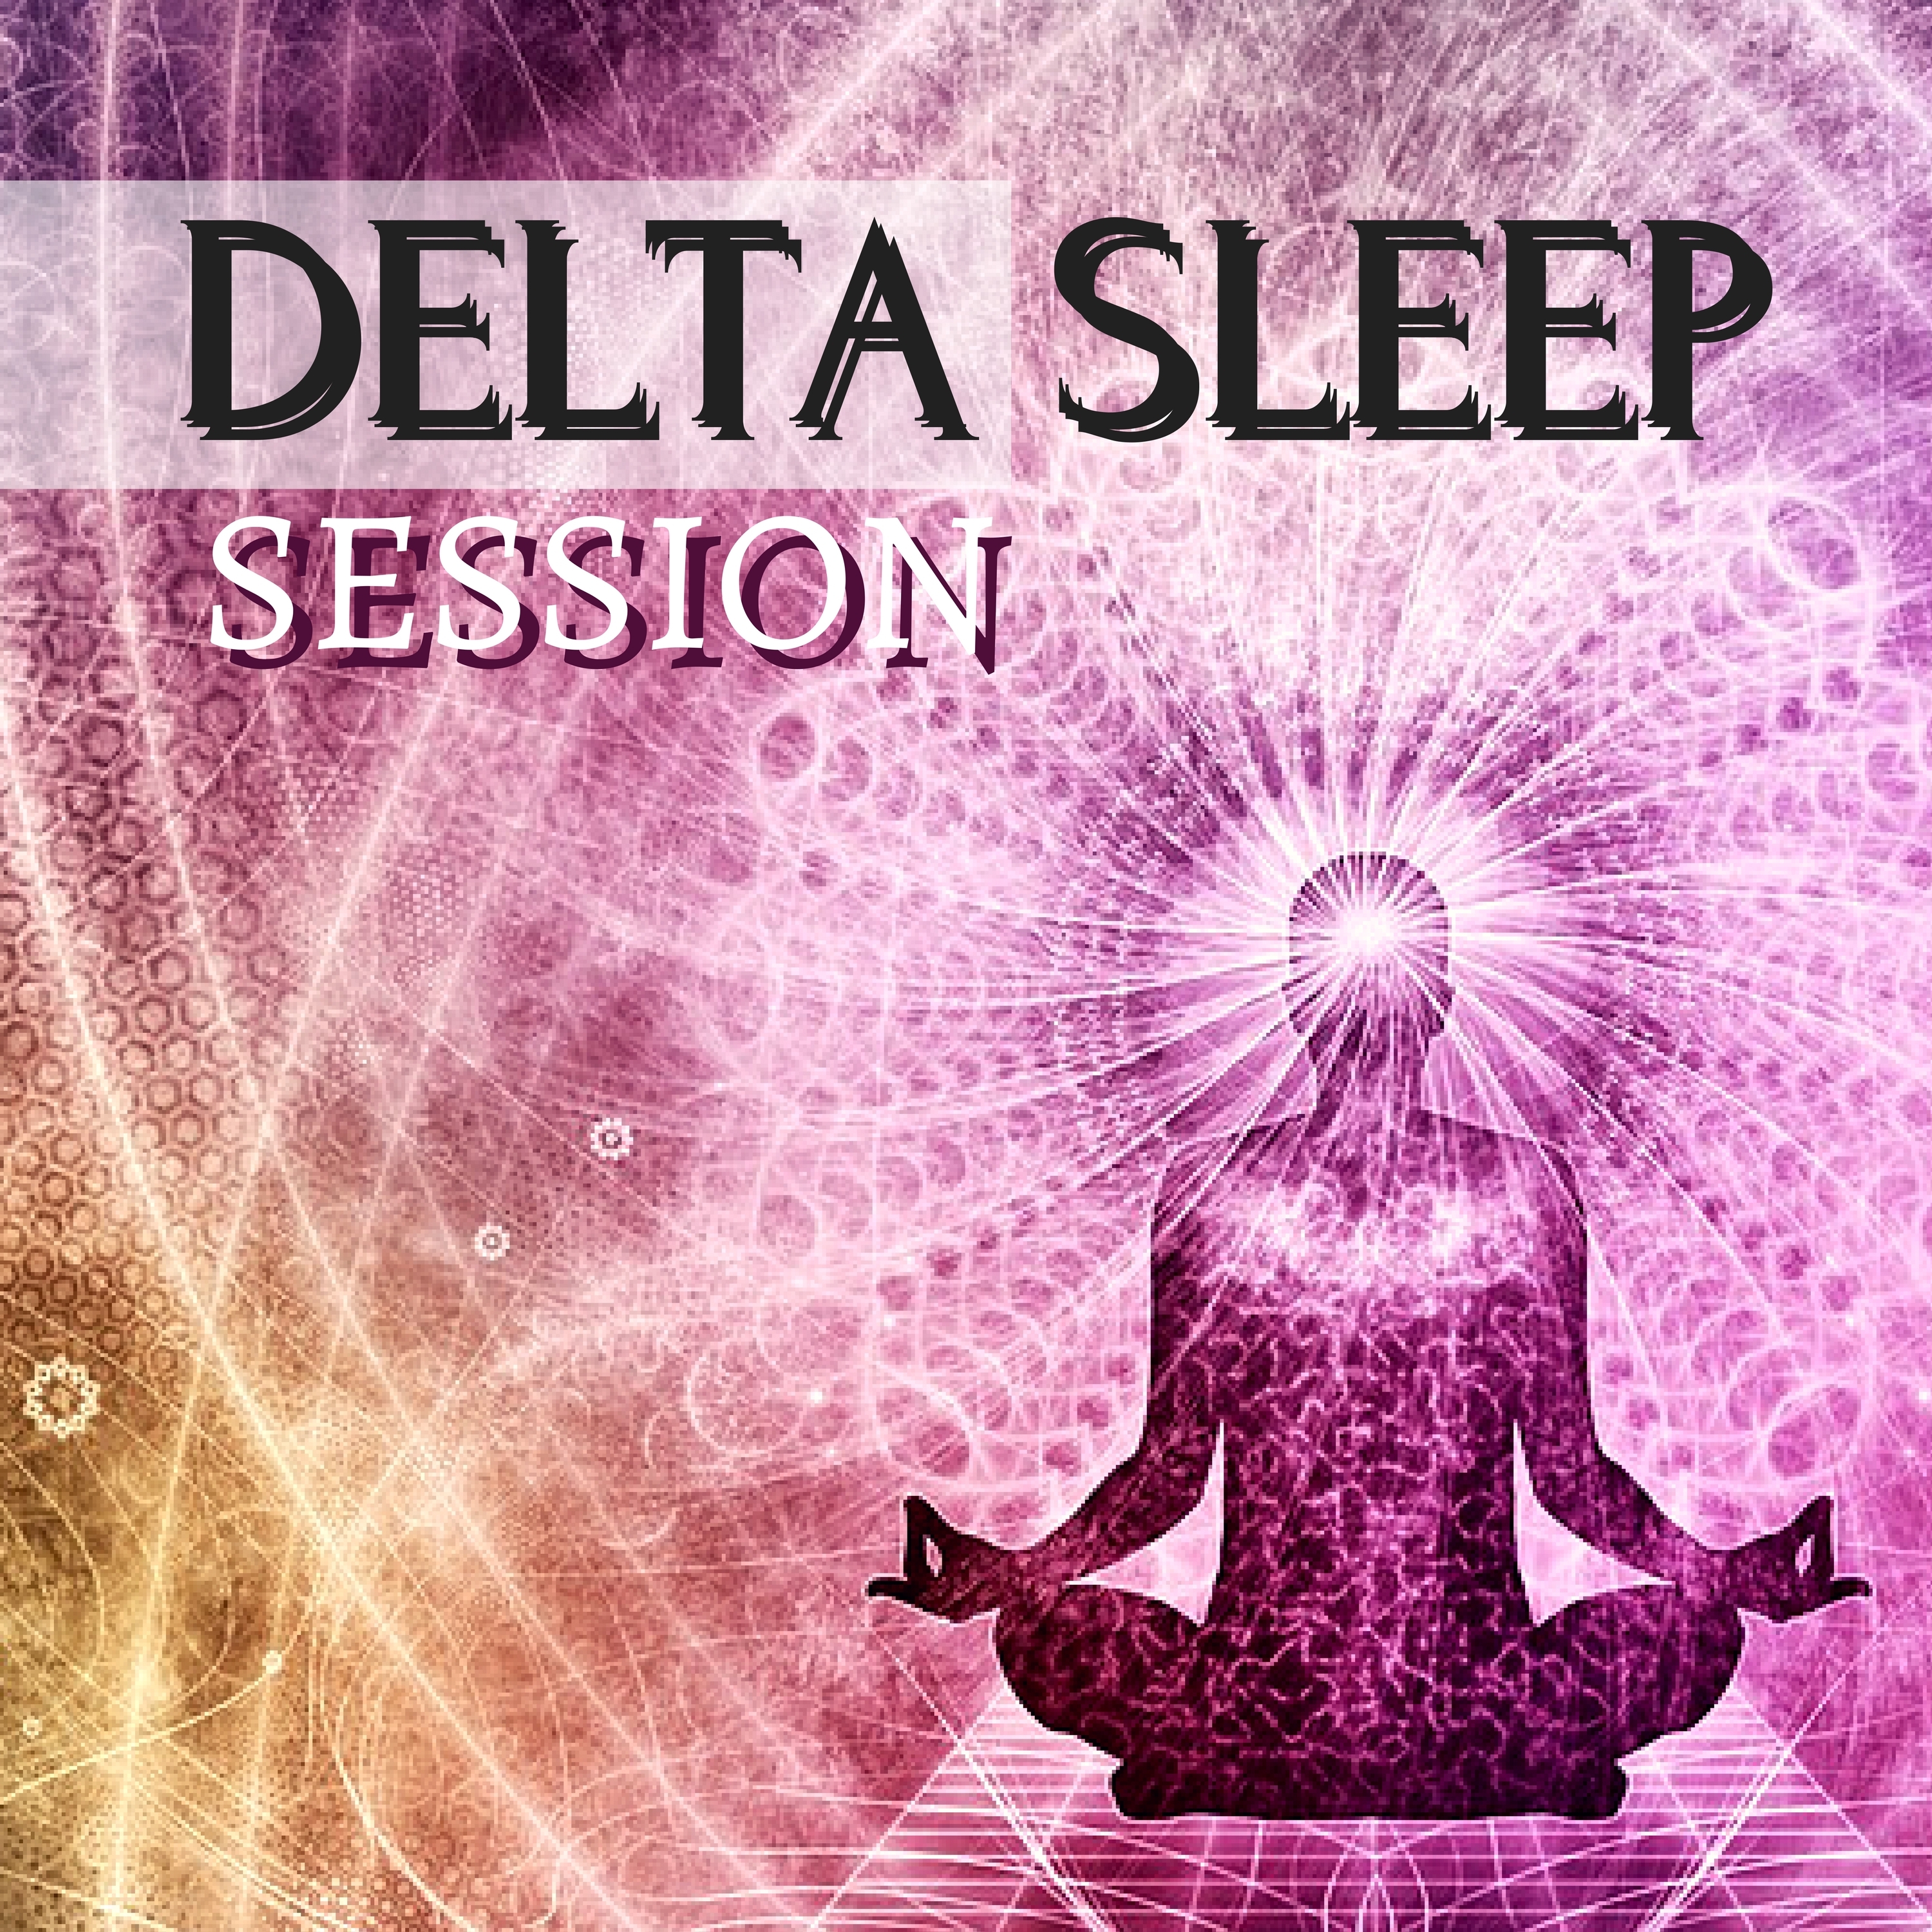 Delta Sleep Waves